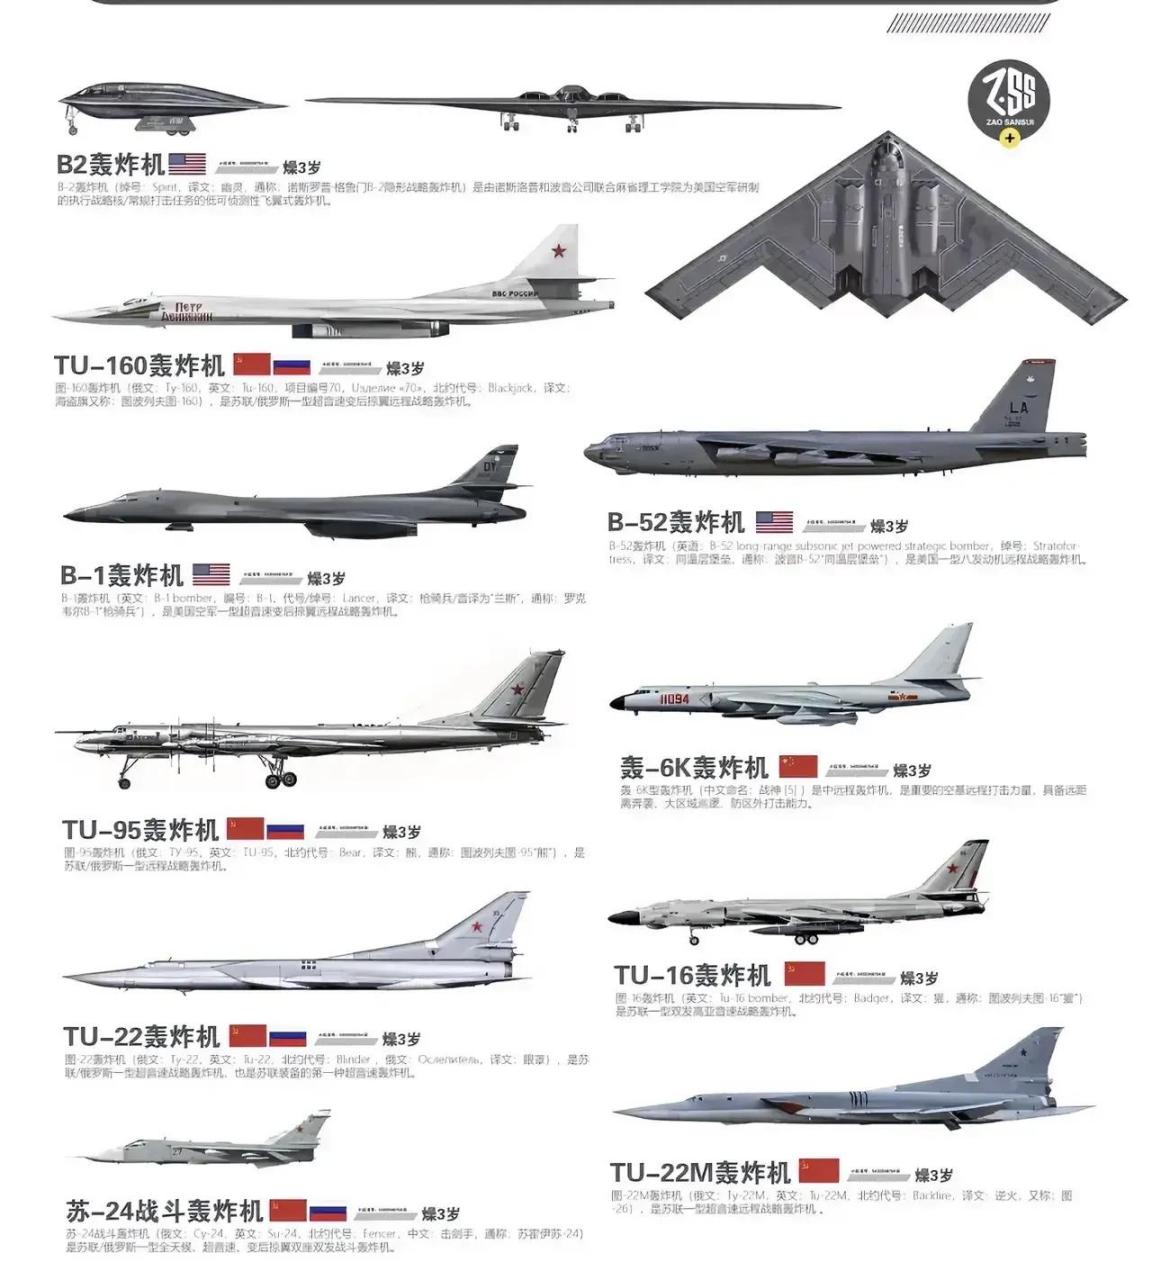 世界轰炸机对比,中国几乎拥有全部型号轰炸机!